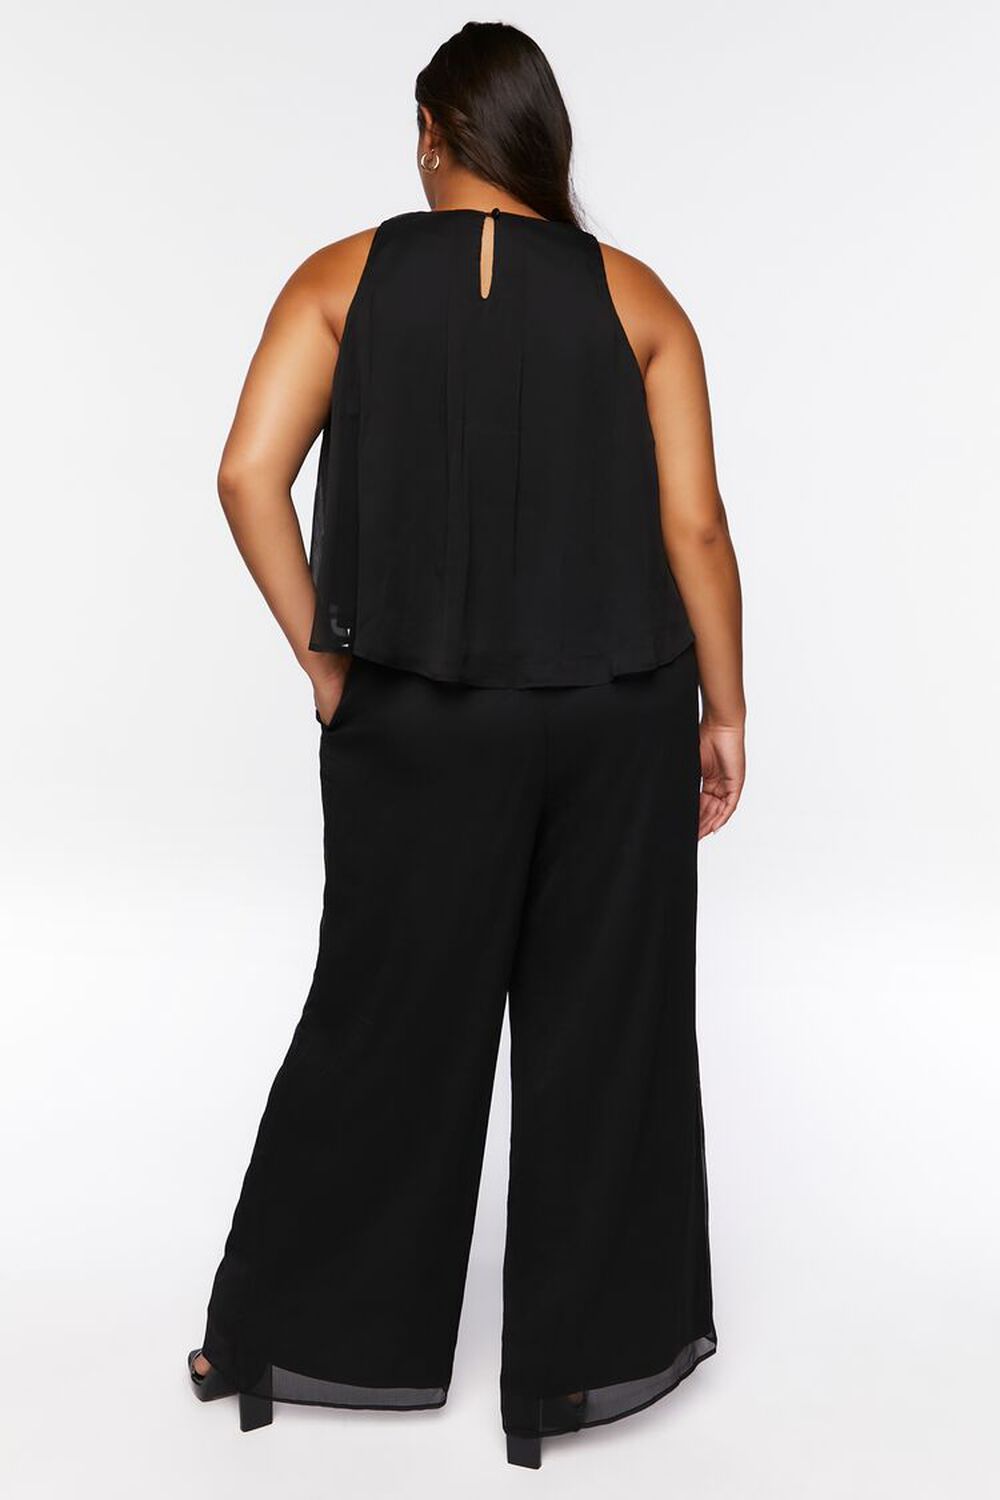 BLACK Plus Size Chiffon Top & Pants Set, image 3